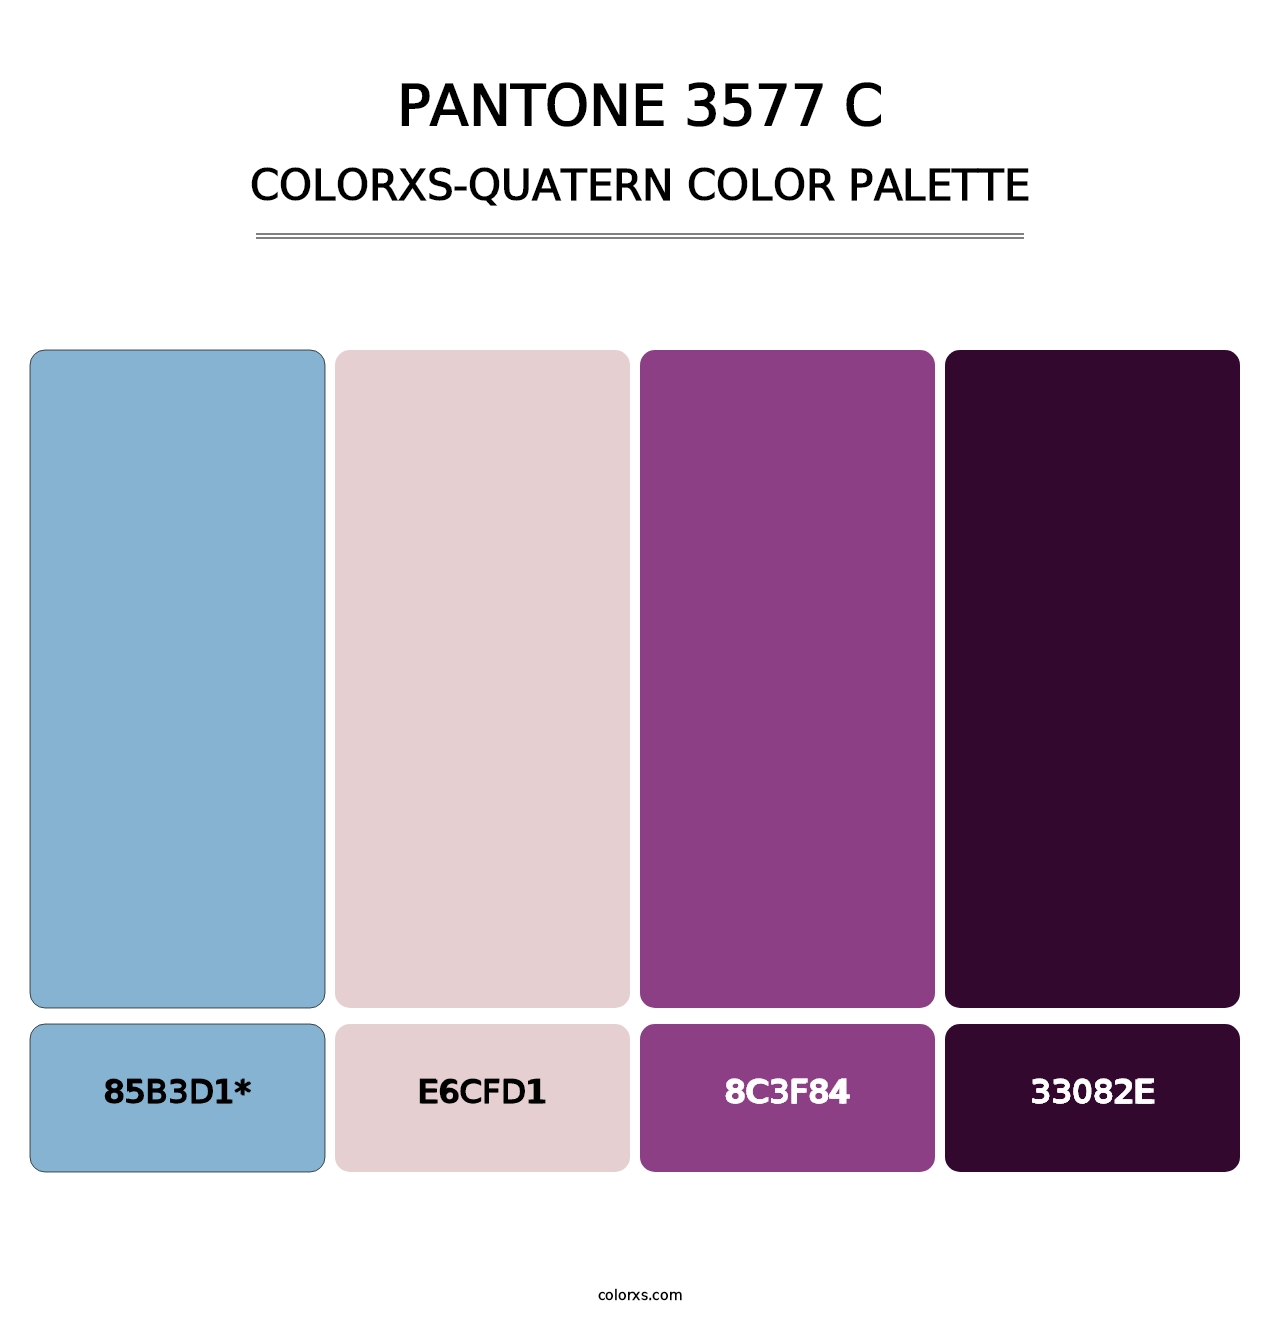 PANTONE 3577 C - Colorxs Quatern Palette